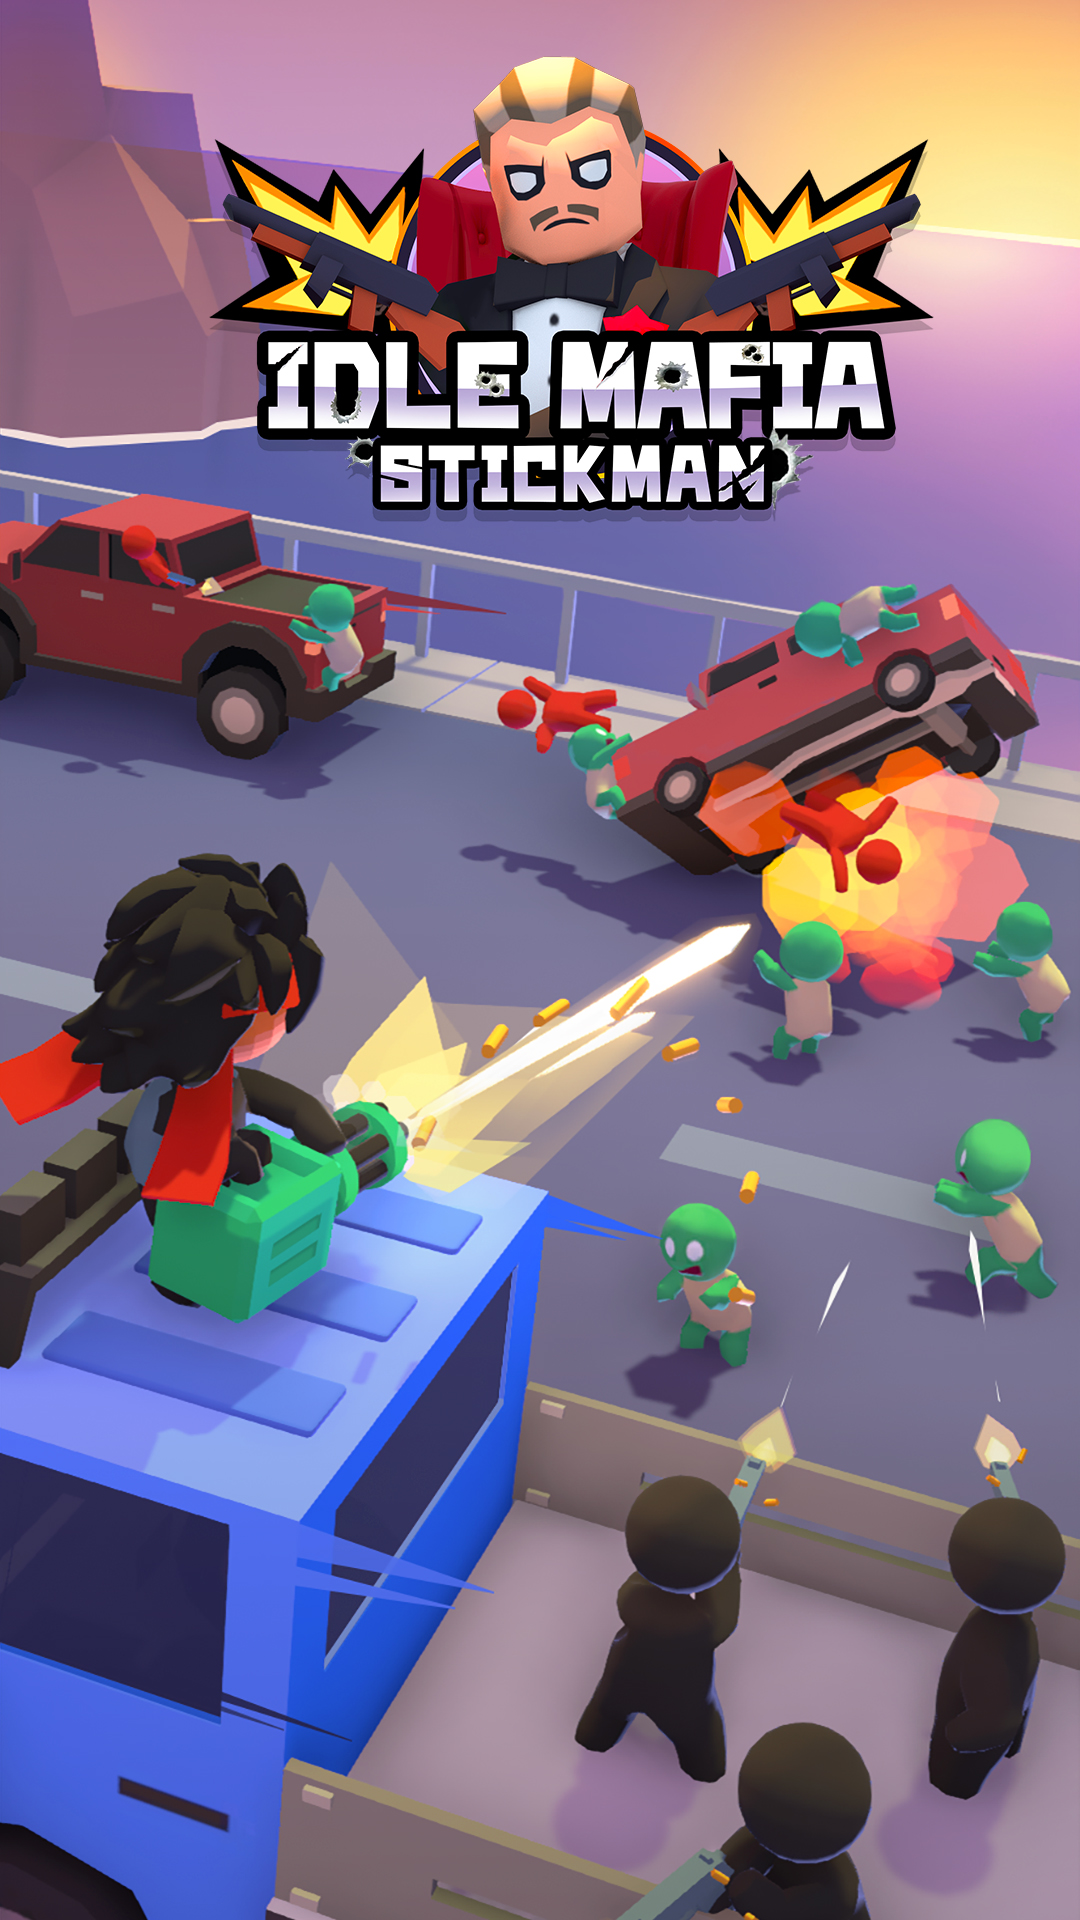 Скачать Stickman: Idle Mafia: Android Стрелялки игра на телефон и планшет.